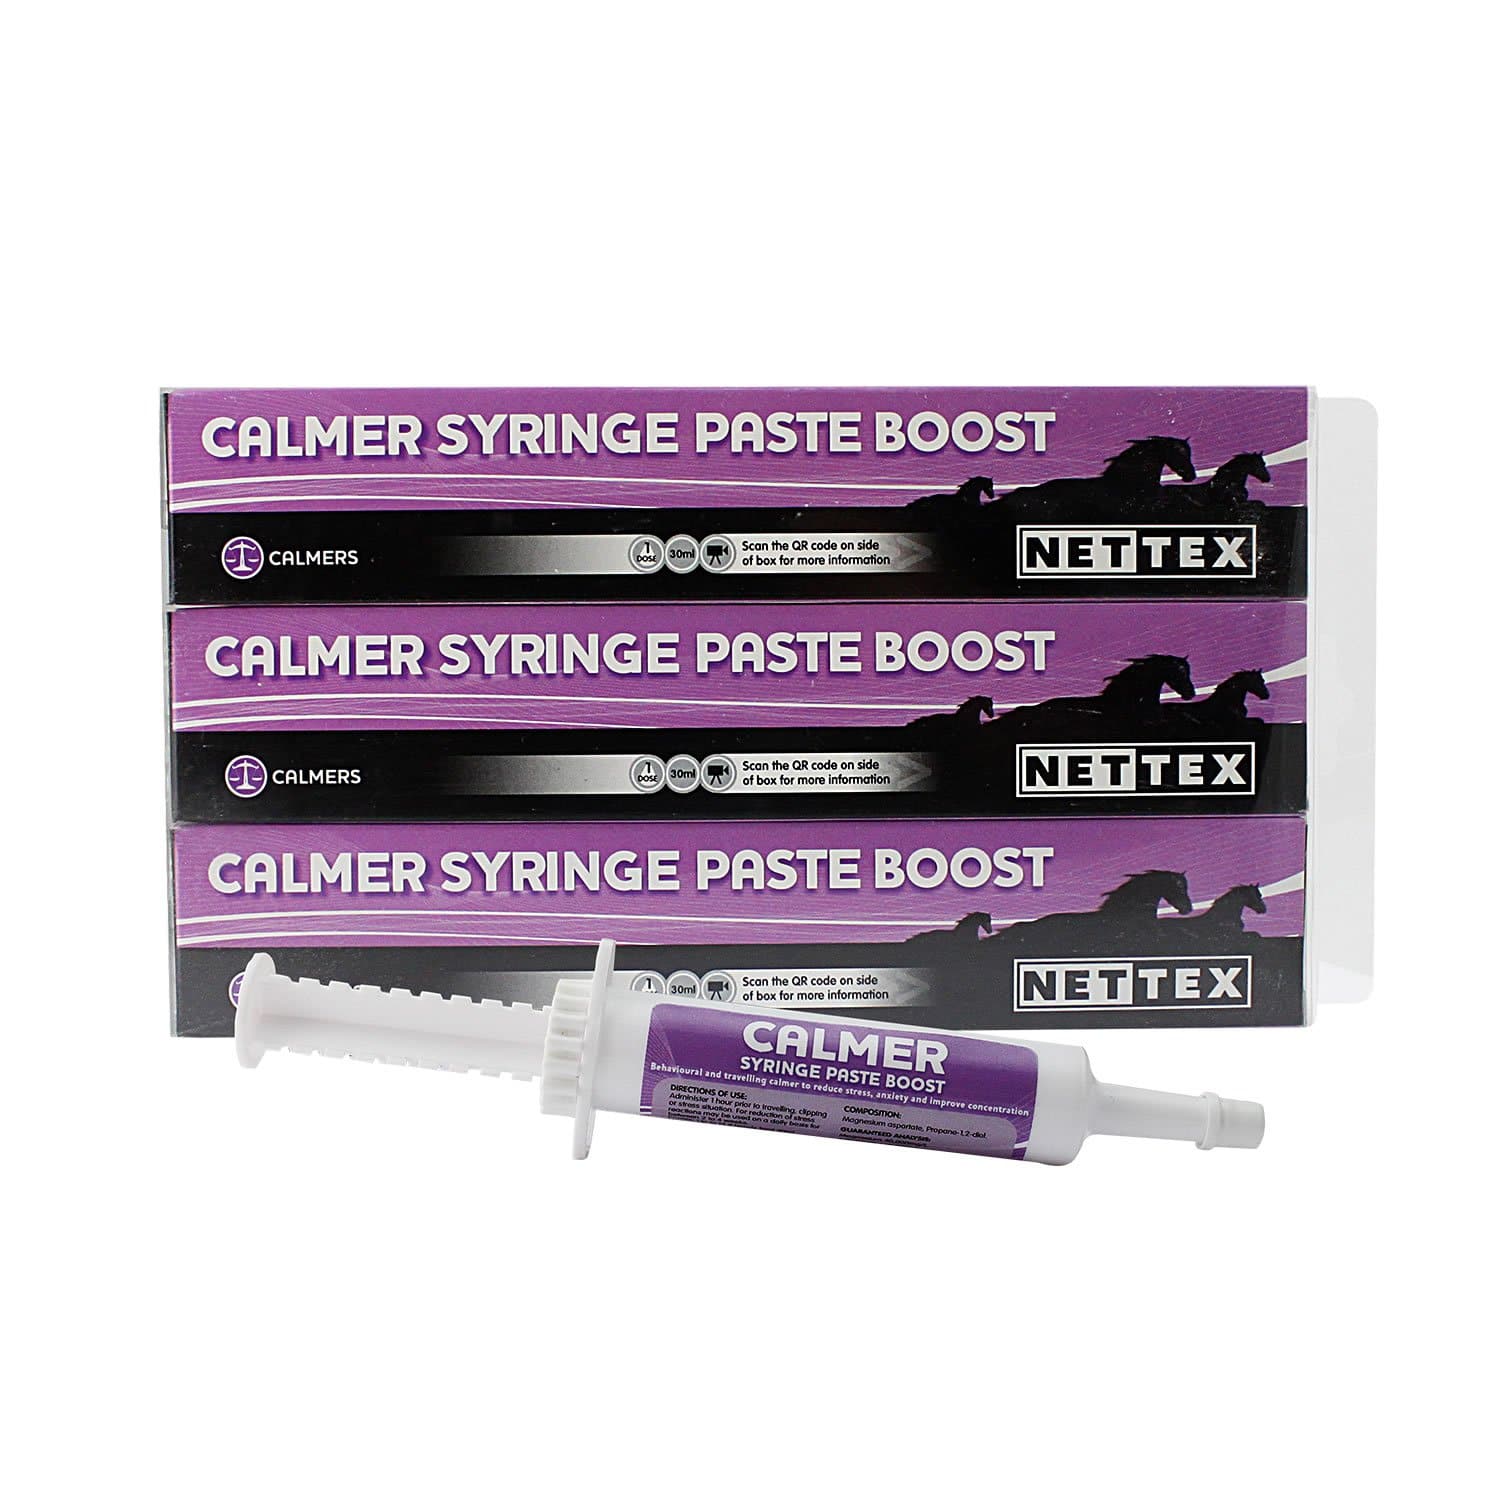 Nettex Calmer Syringe Paste Boost - 3 Pack